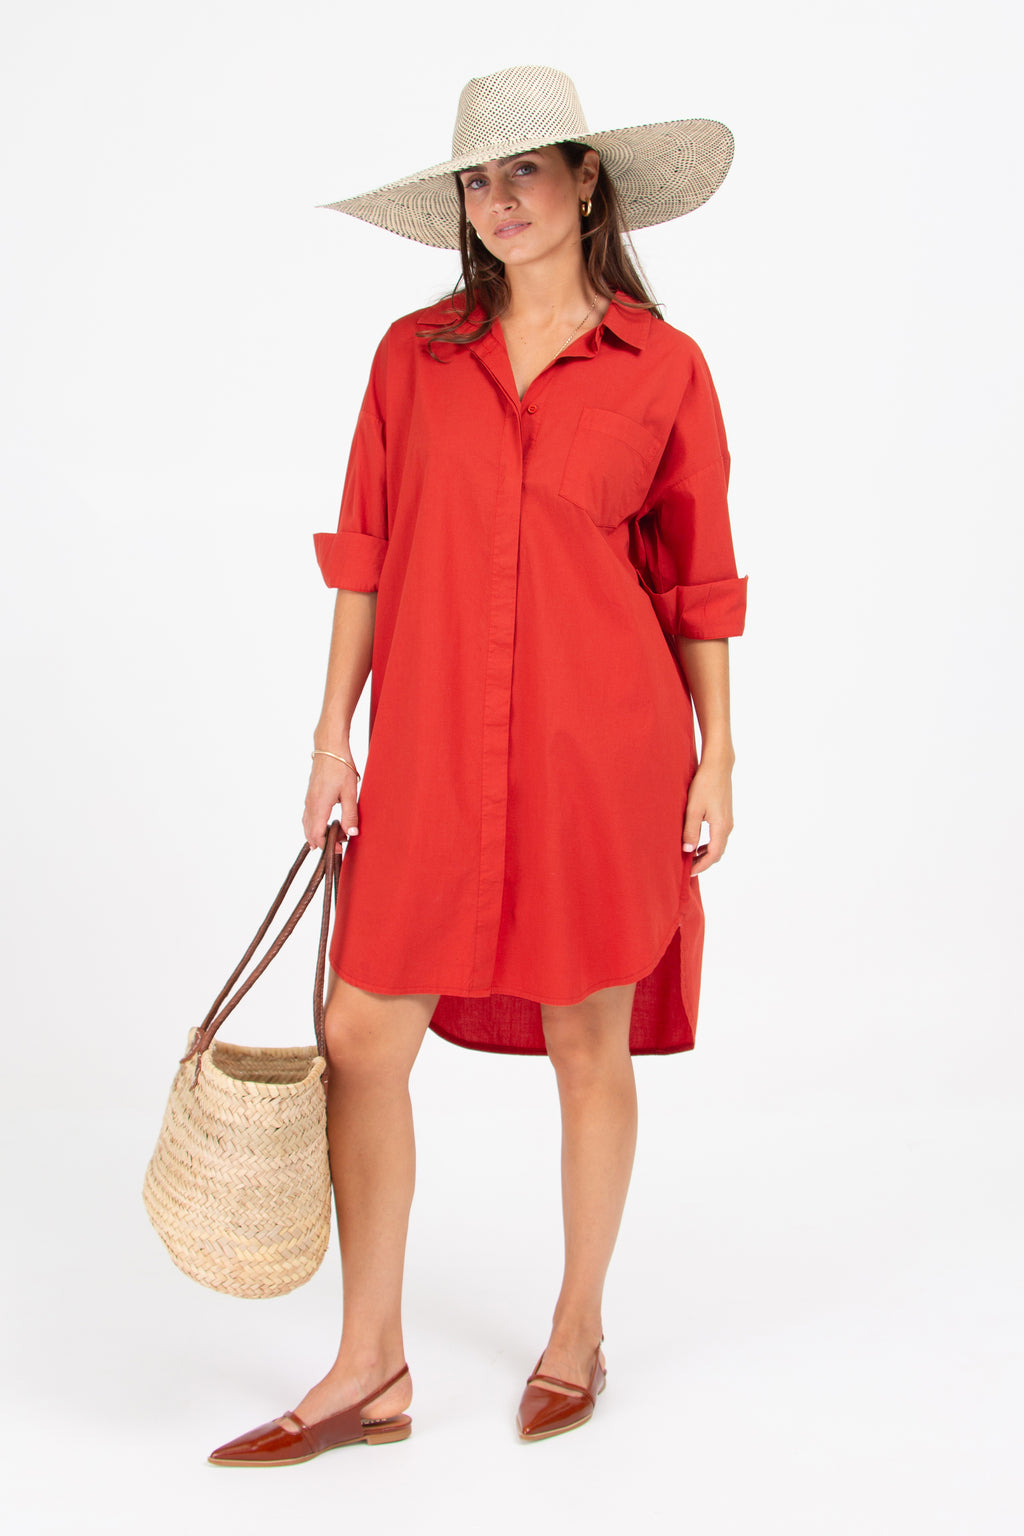 Duran tomato red popeline shirt dress